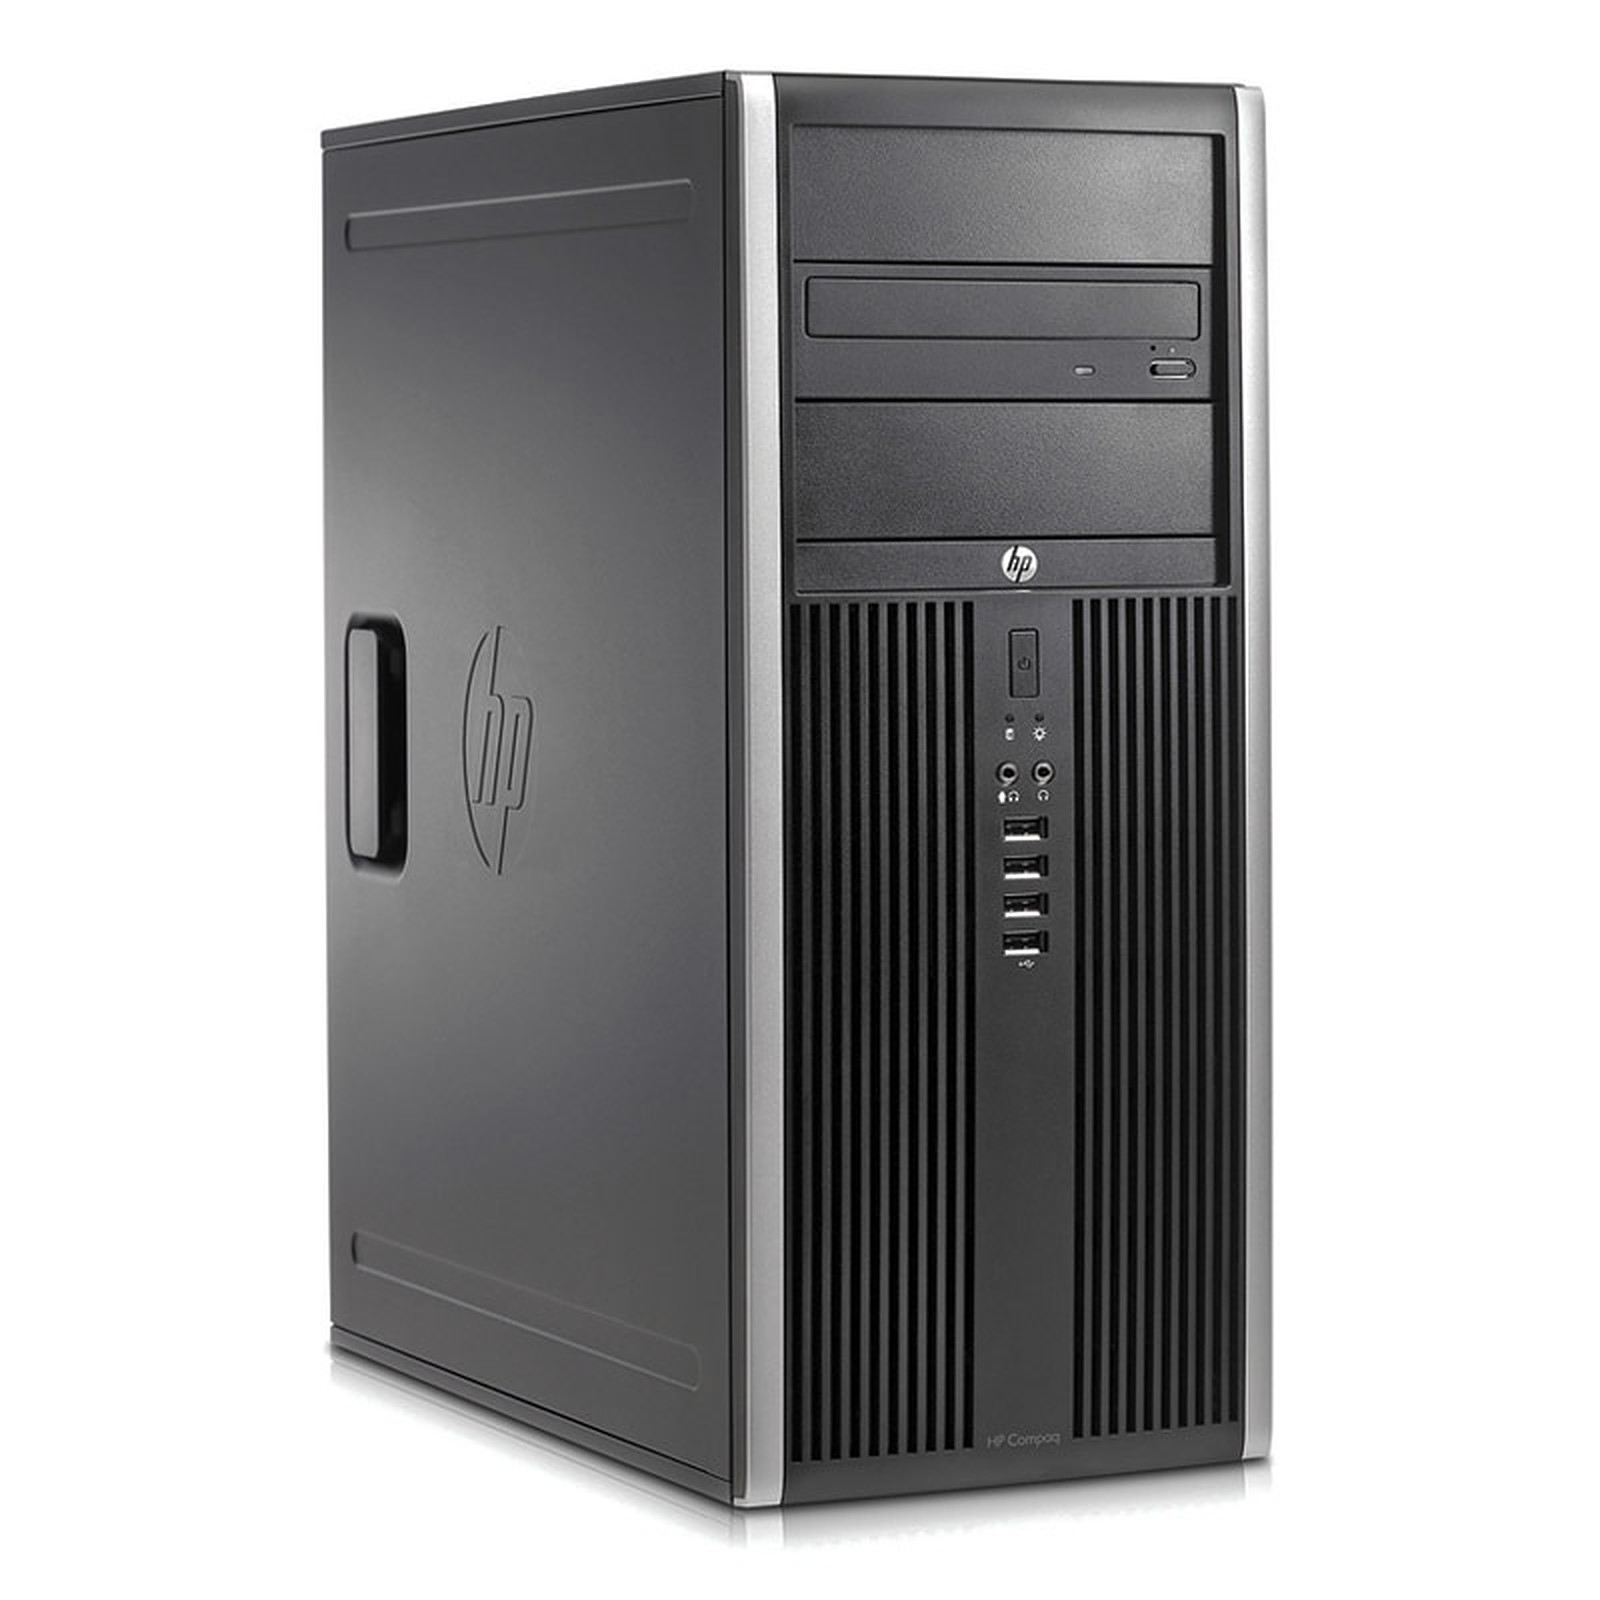 HP Elite 8300 CMT (I5347824S) · Reconditionne - PC de bureau reconditionne HP